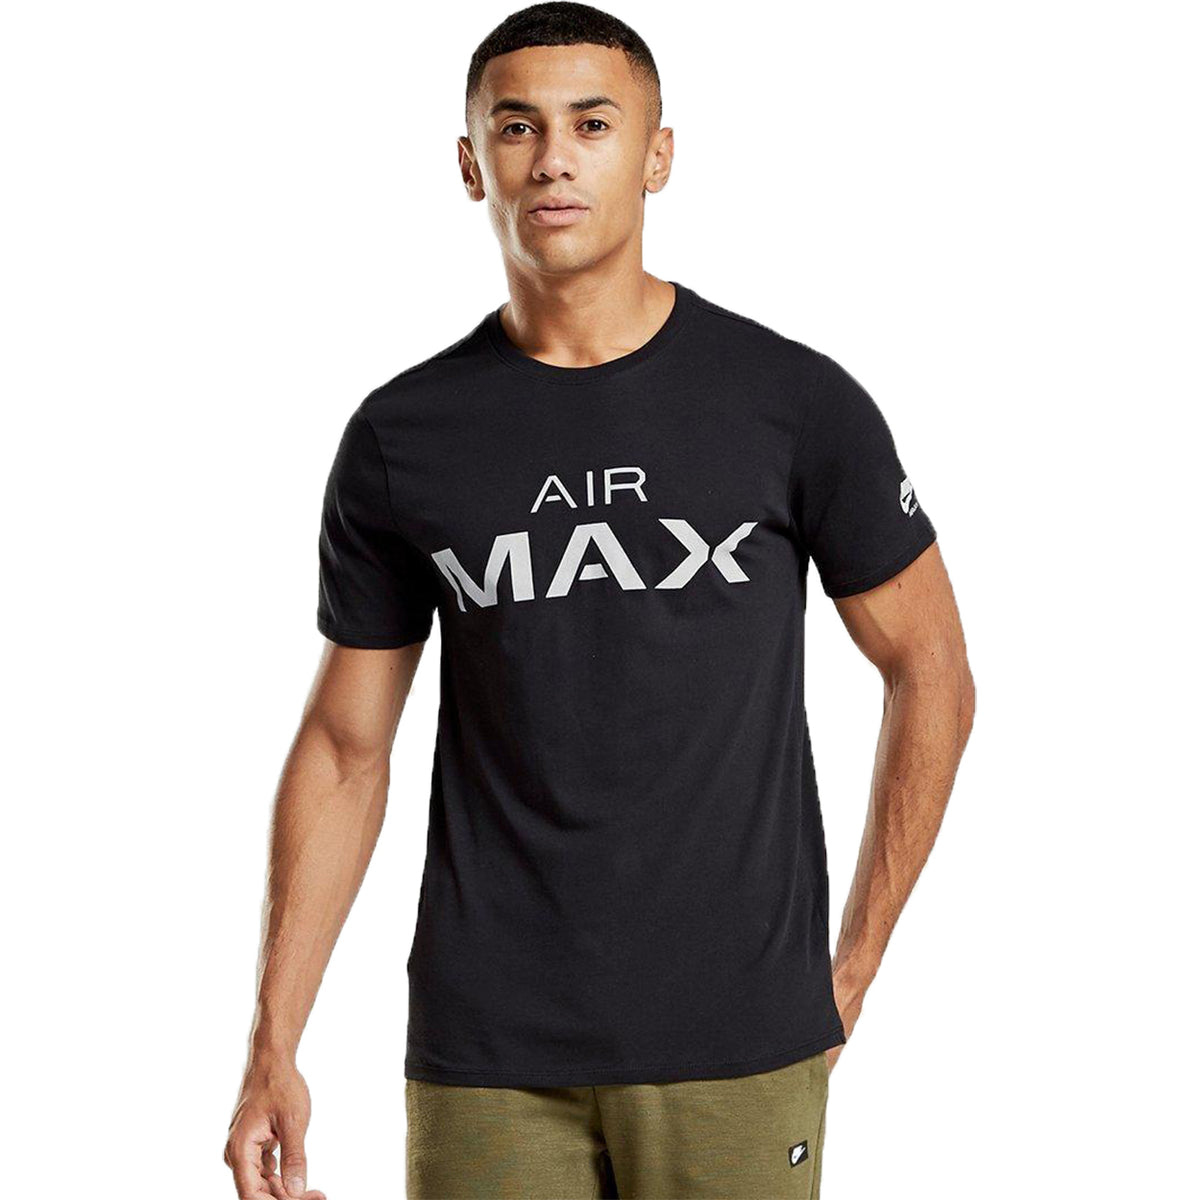 nike air max t shirt black